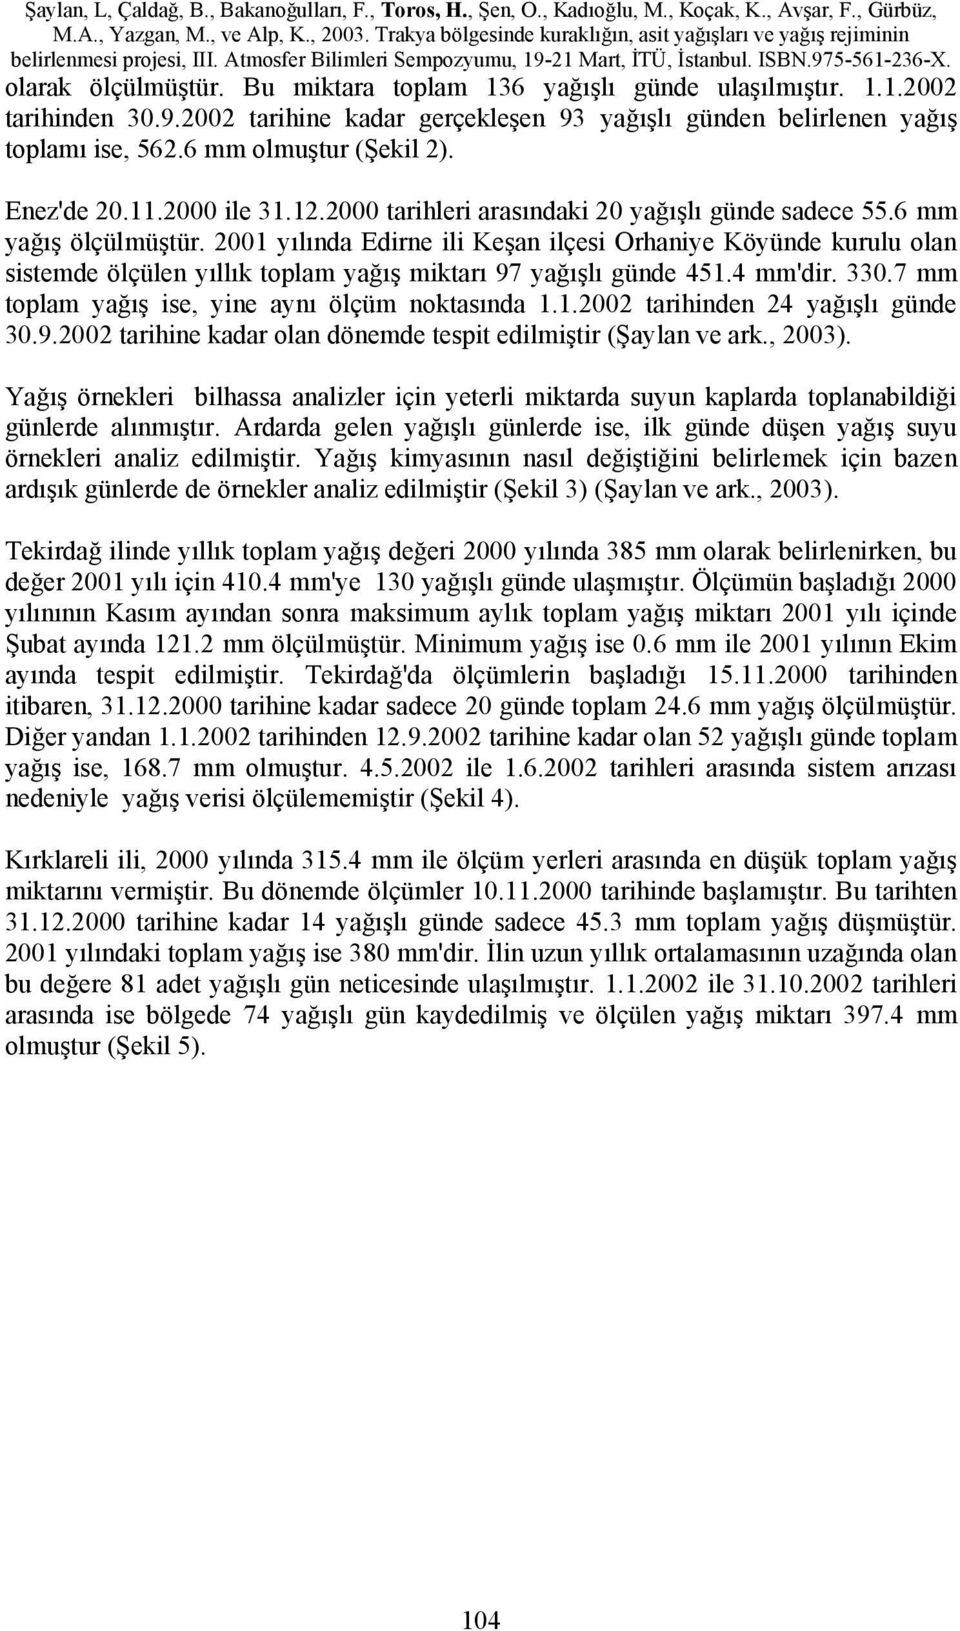 2001 yılında Edirne ili Keşan ilçesi Orhaniye Köyünde kurulu olan sistemde ölçülen yıllık toplam yağış miktarı 97 yağışlı günde 451.4 mm'dir. 330.7 mm toplam yağış ise, yine aynı ölçüm noktasında 1.1.2002 tarihinden 24 yağışlı günde 30.